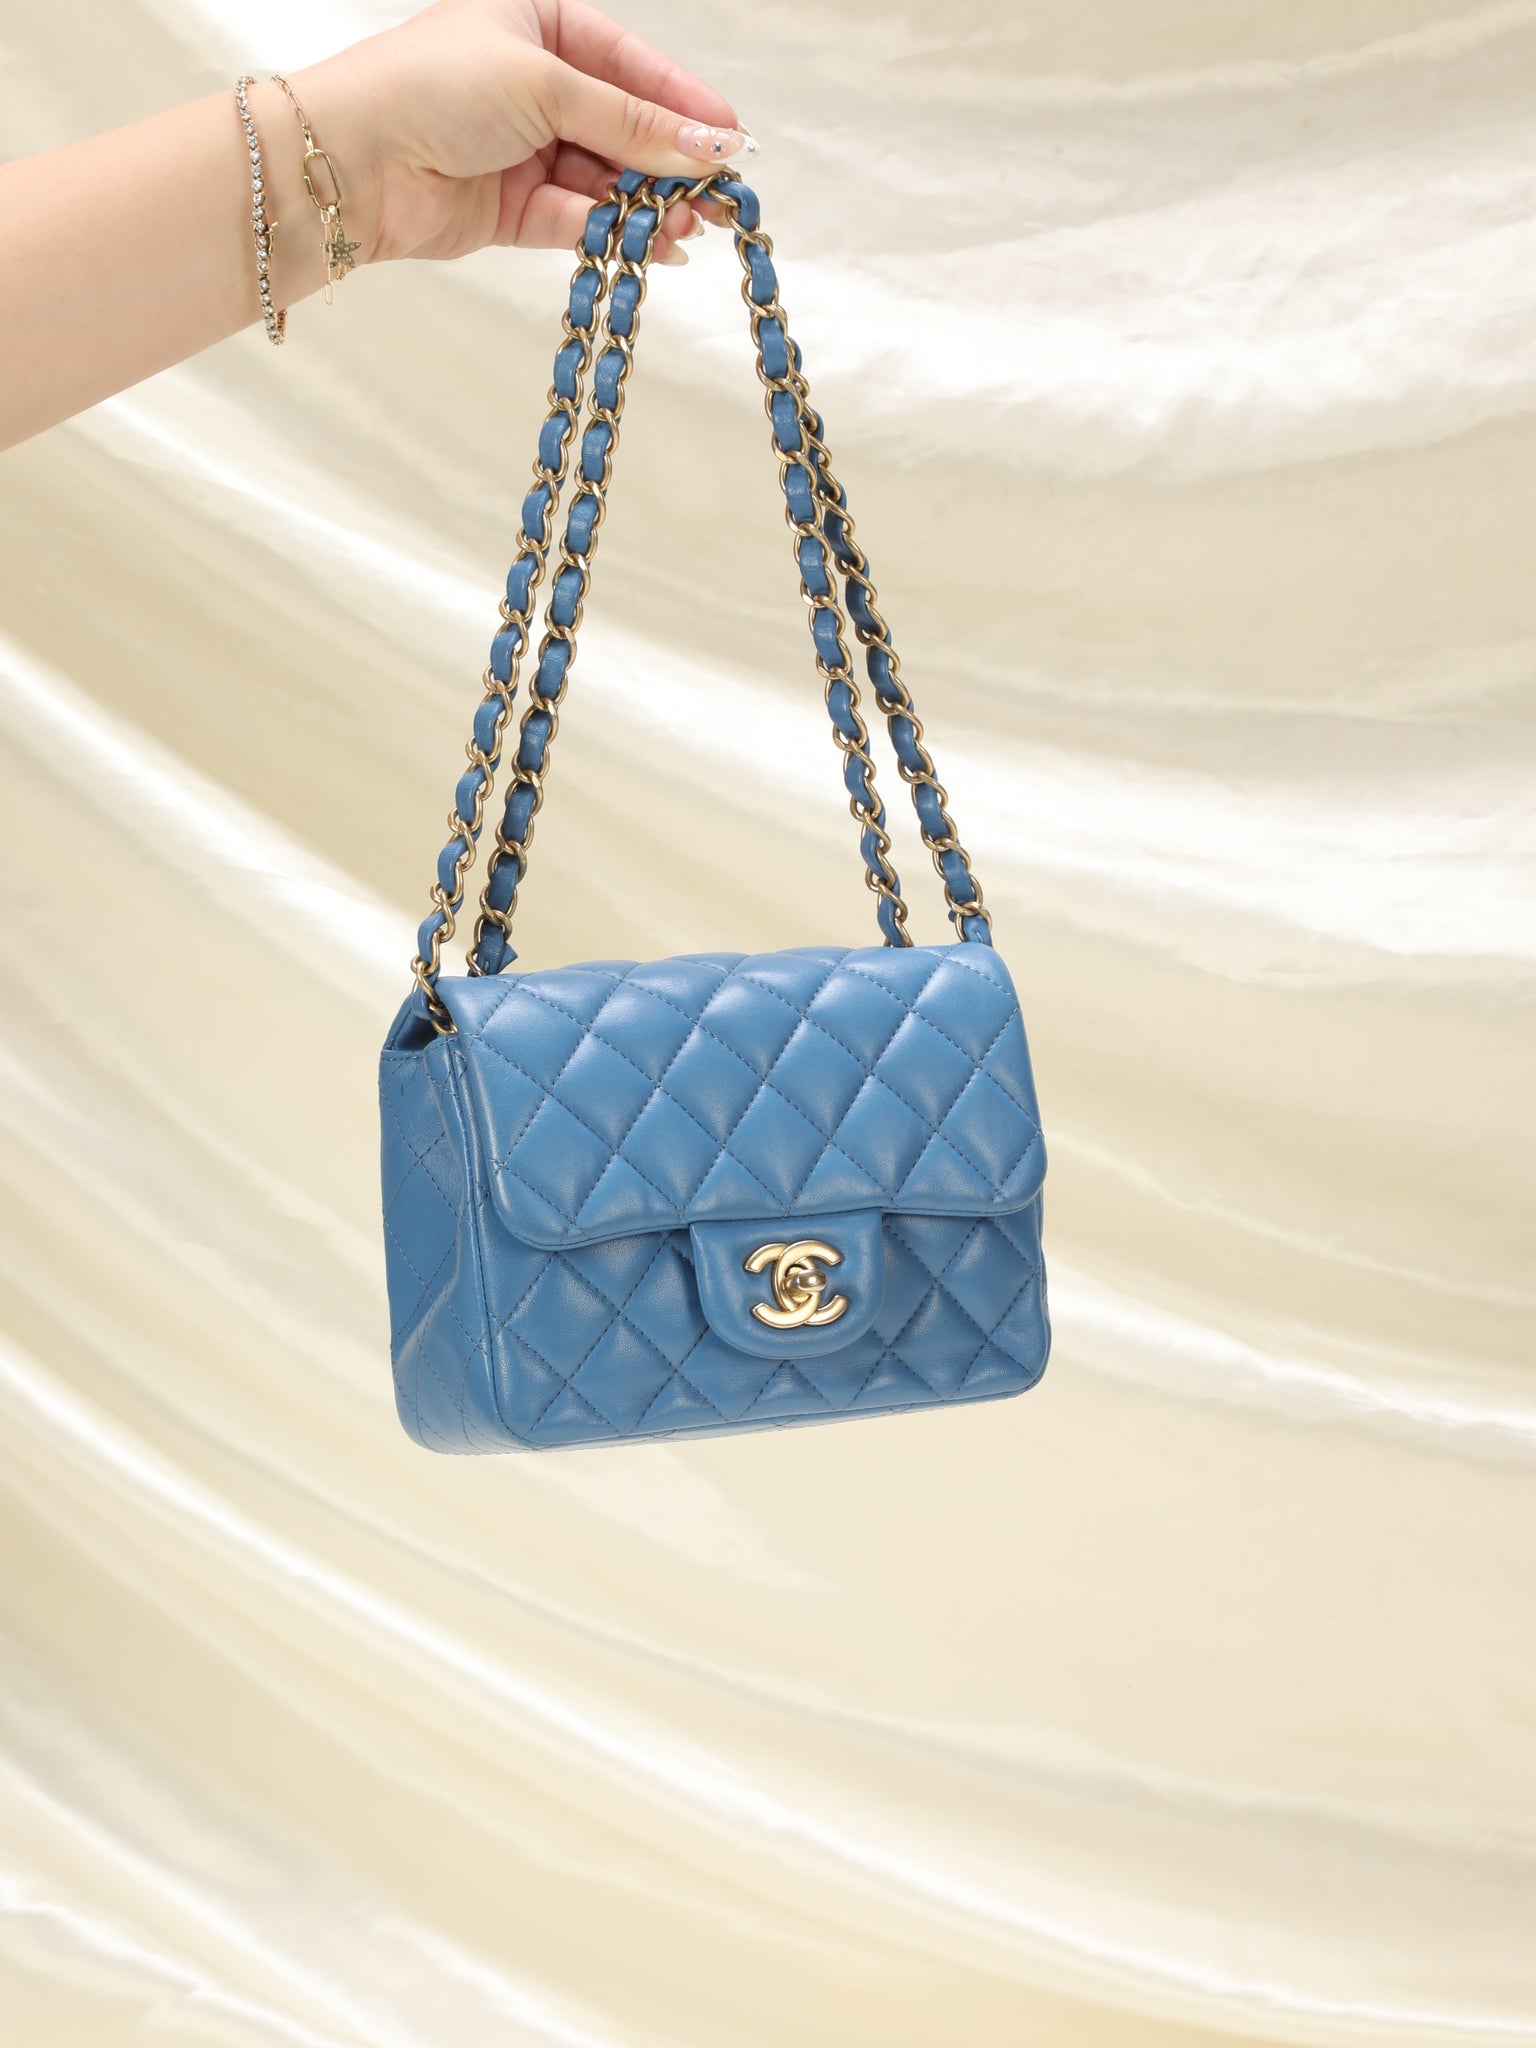 chanel blue patent bag purse